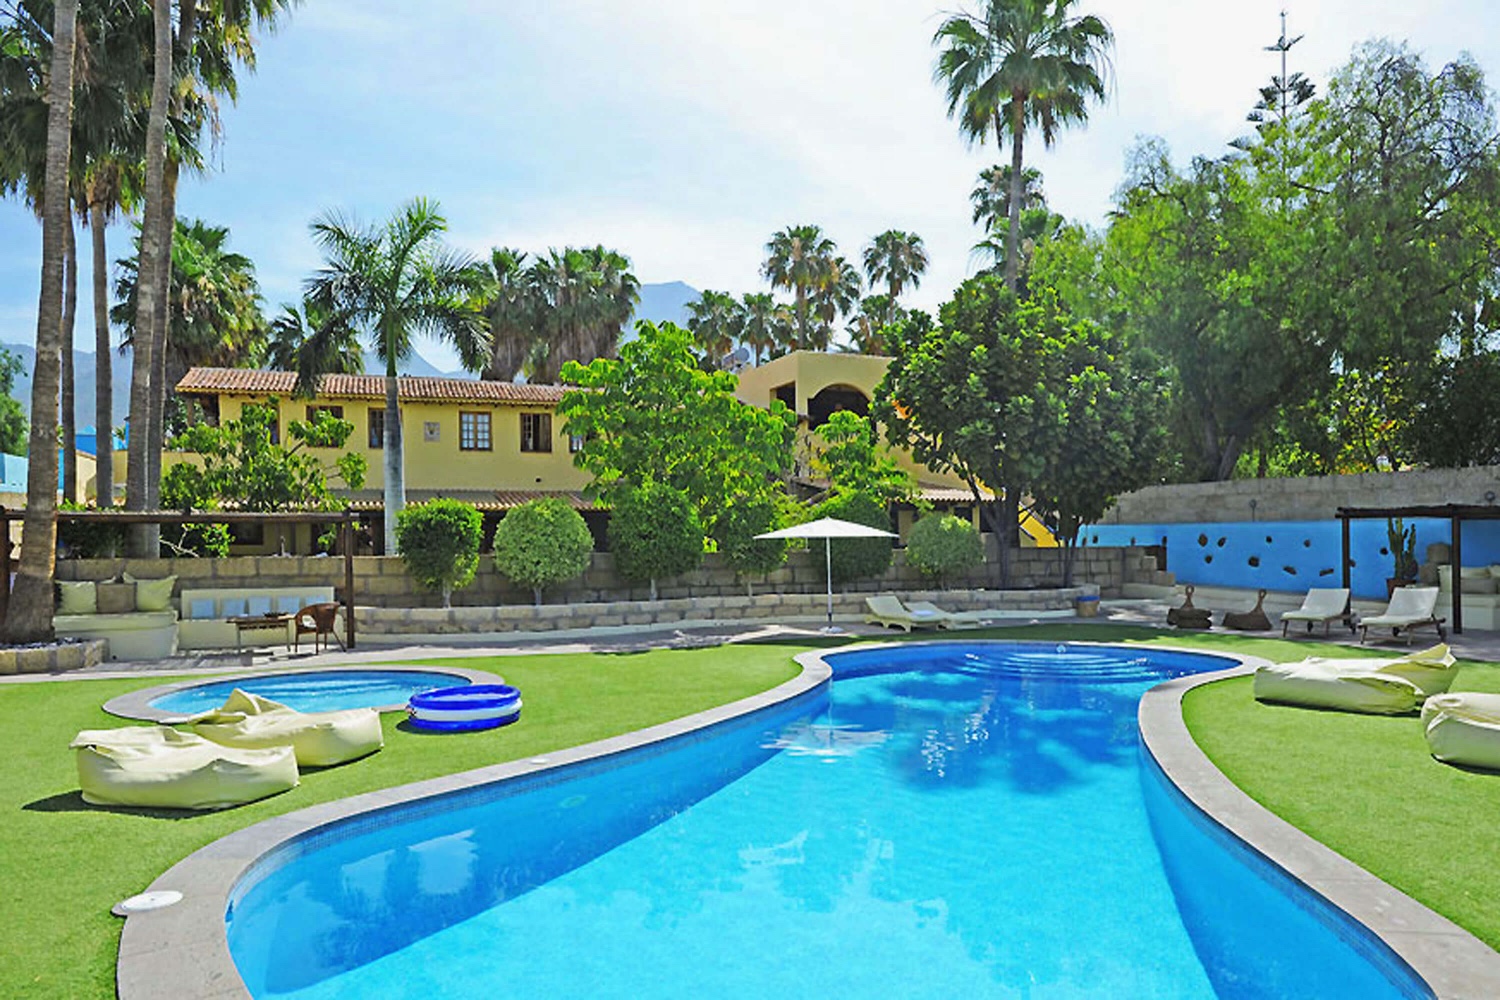 Maison de vacances avec une grande piscine communale pour un séjour de détente INTHE sud de Tenerife